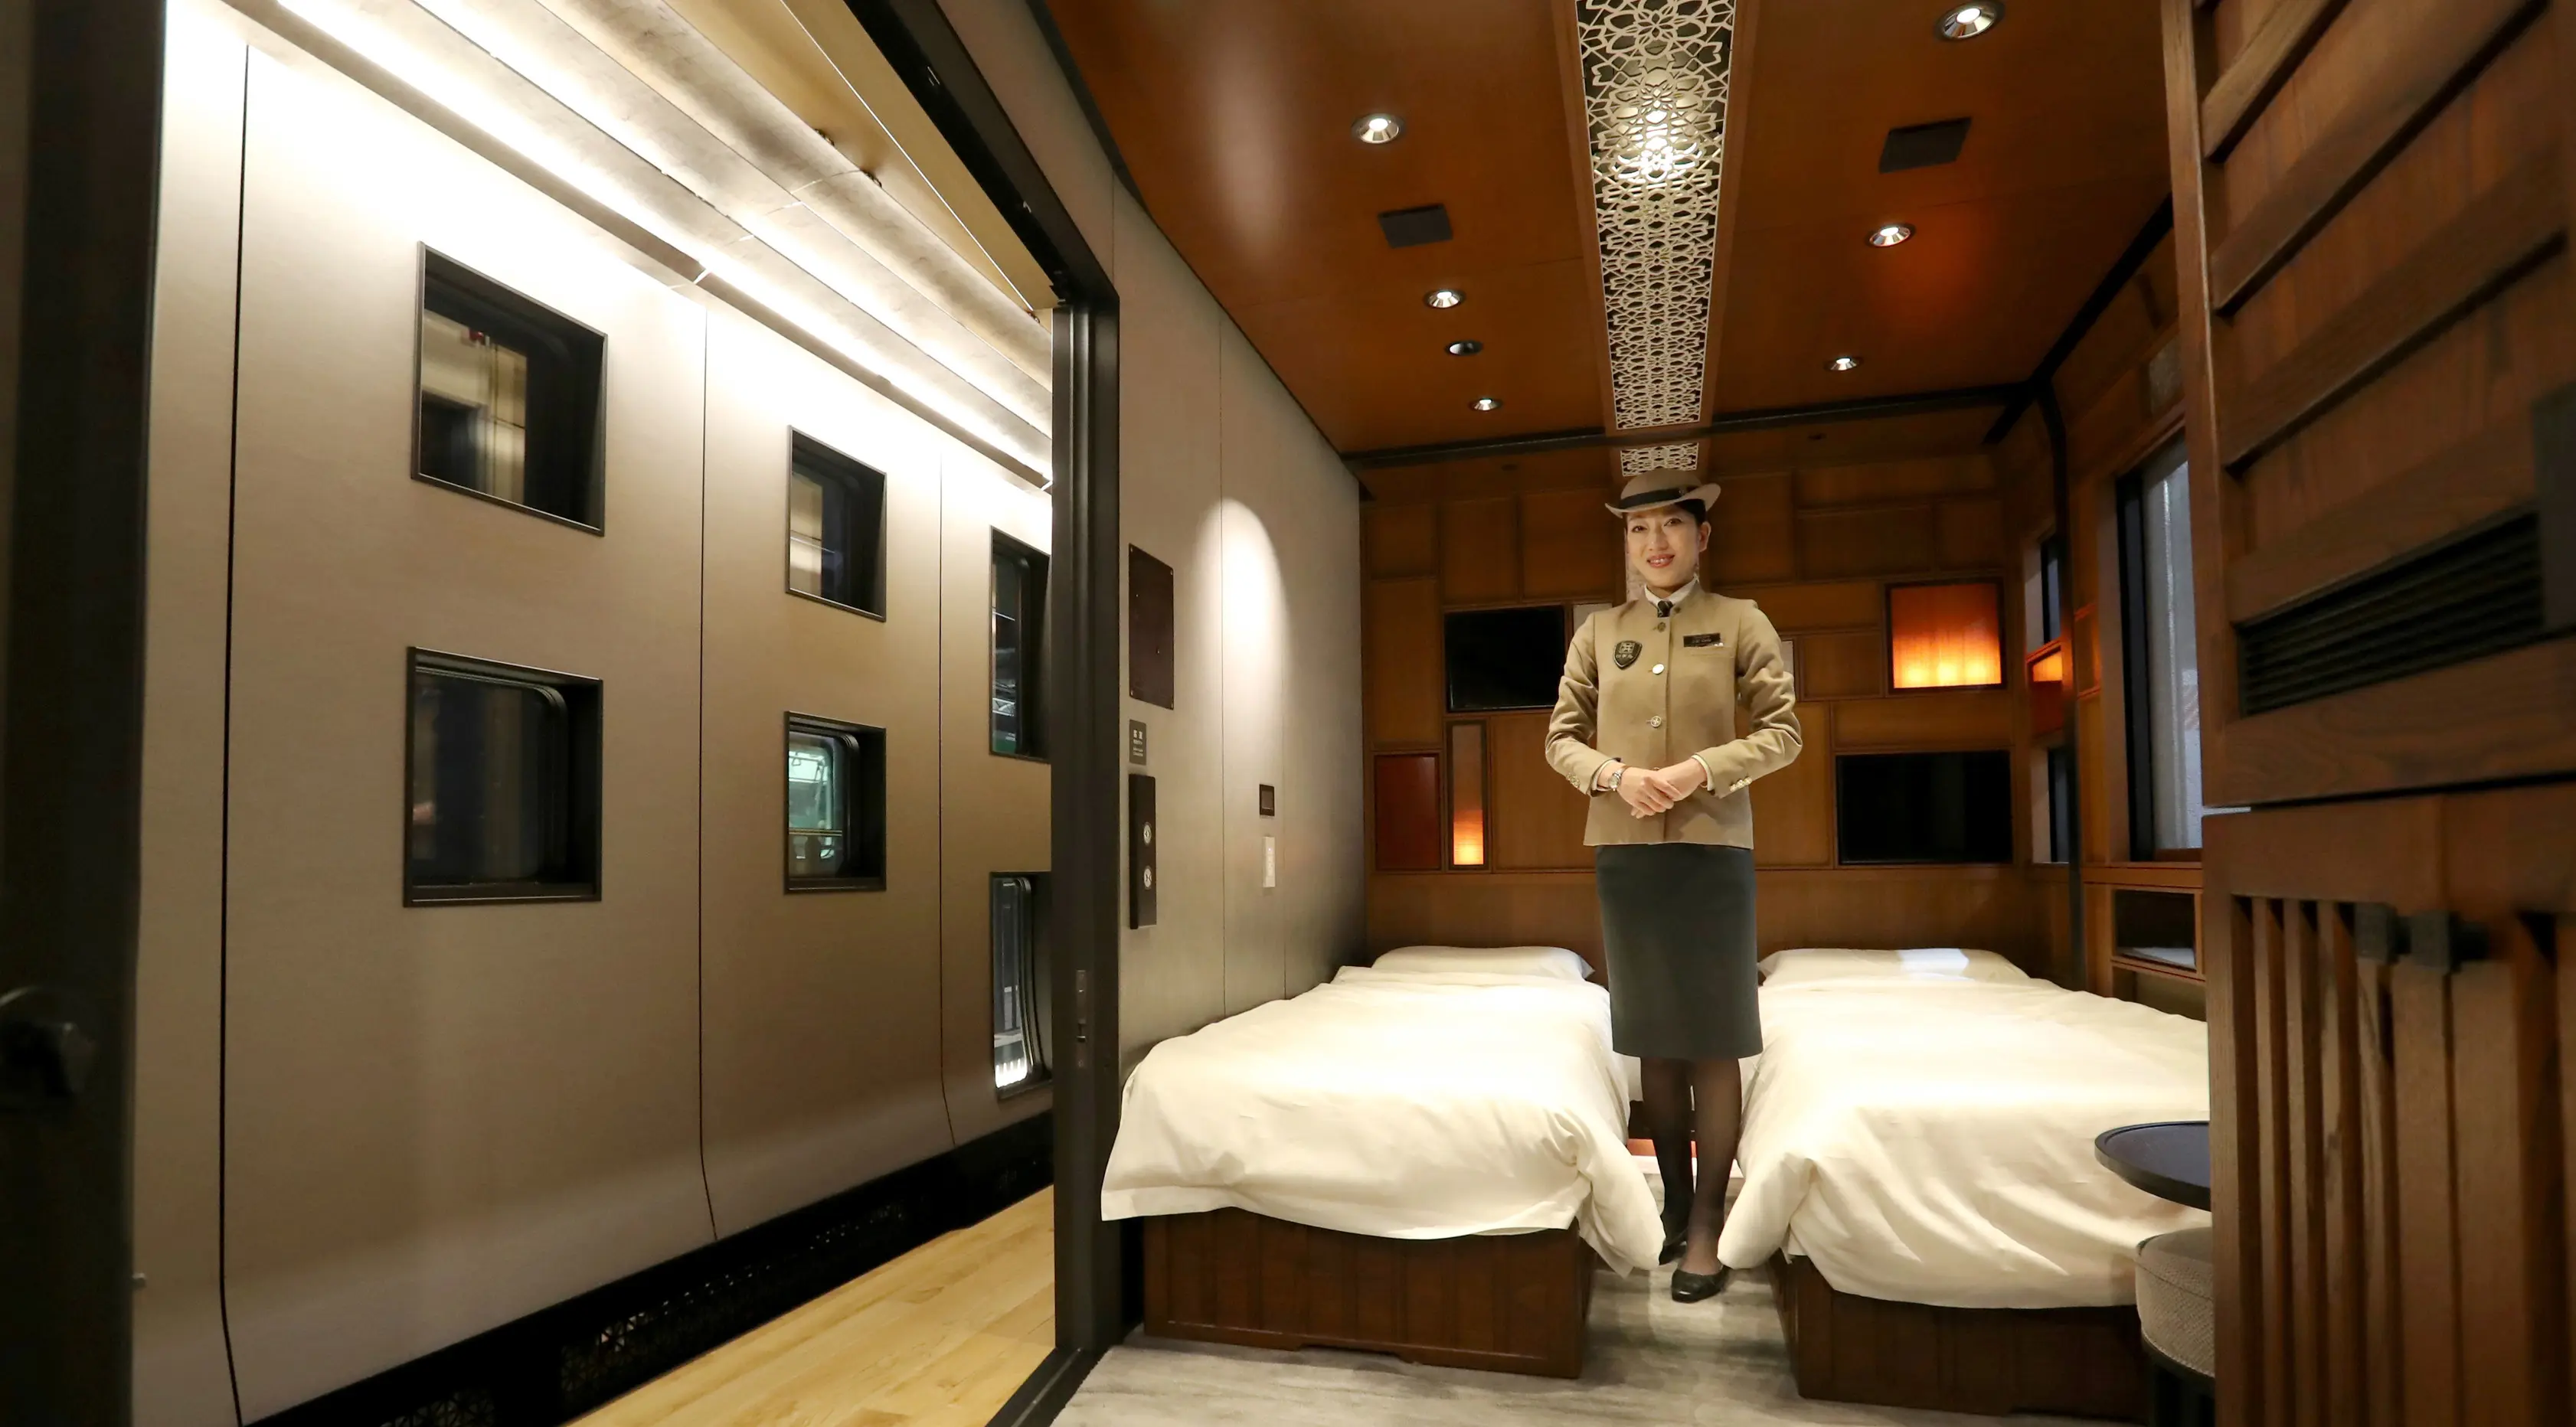 Salah satu kamar yang berada di kereta api mewah "Train Suite Shiki-Shima" di Tokyo, Jepang, 16 Maret 2017. Tiap suite Shiki-Shima difasilitasi ruangan dua tingkat, kamar mandi dan toilet, ruang penyimpanan, serta tempat tidur. (str/JIJI PRESS/AFP)